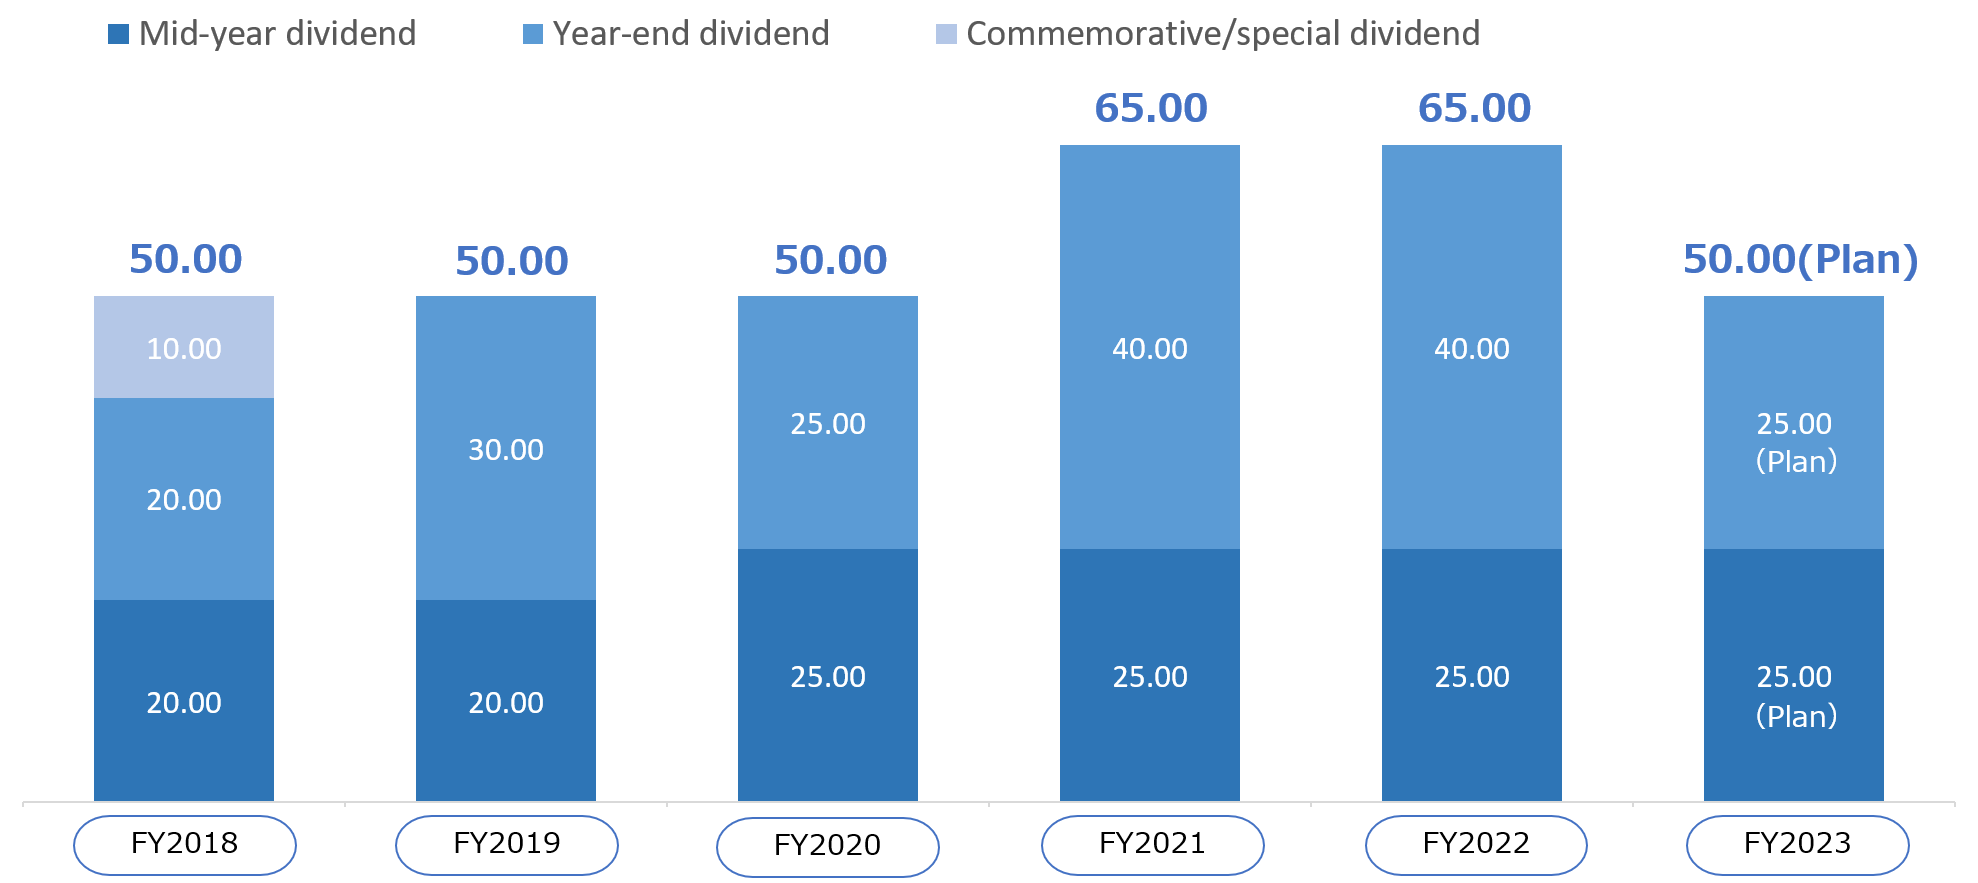 FY2012：22.50 yen（Mid-year dividend：11.25 yen Year-end dividend：11.25 yen） FY2013：24.75 yen（Mid-year dividend：11.25 yen Year-end dividend：13.50 yen） FY2014：28.50 yen（Mid-year dividend：13.50 yen Year-end dividend：15.00 yen） FY2015：30.00 yen（Mid-year dividend：15.00 yen Year-end dividend：15.00 yen） FY2016：35.00 yen（Mid-year dividend：15.00 yen Year-end dividend：15.00 yen Commemorative special dividend：5.00 yen） FY2017：40.00 yen（Mid-year dividend：15.00 yen Year-end dividend：15.00 yen Commemorative special dividend：10.00 yen） FY2018（plans）：40.00 yen（Mid-year dividend：20.00 yen Year-end dividend：20.00 yen）